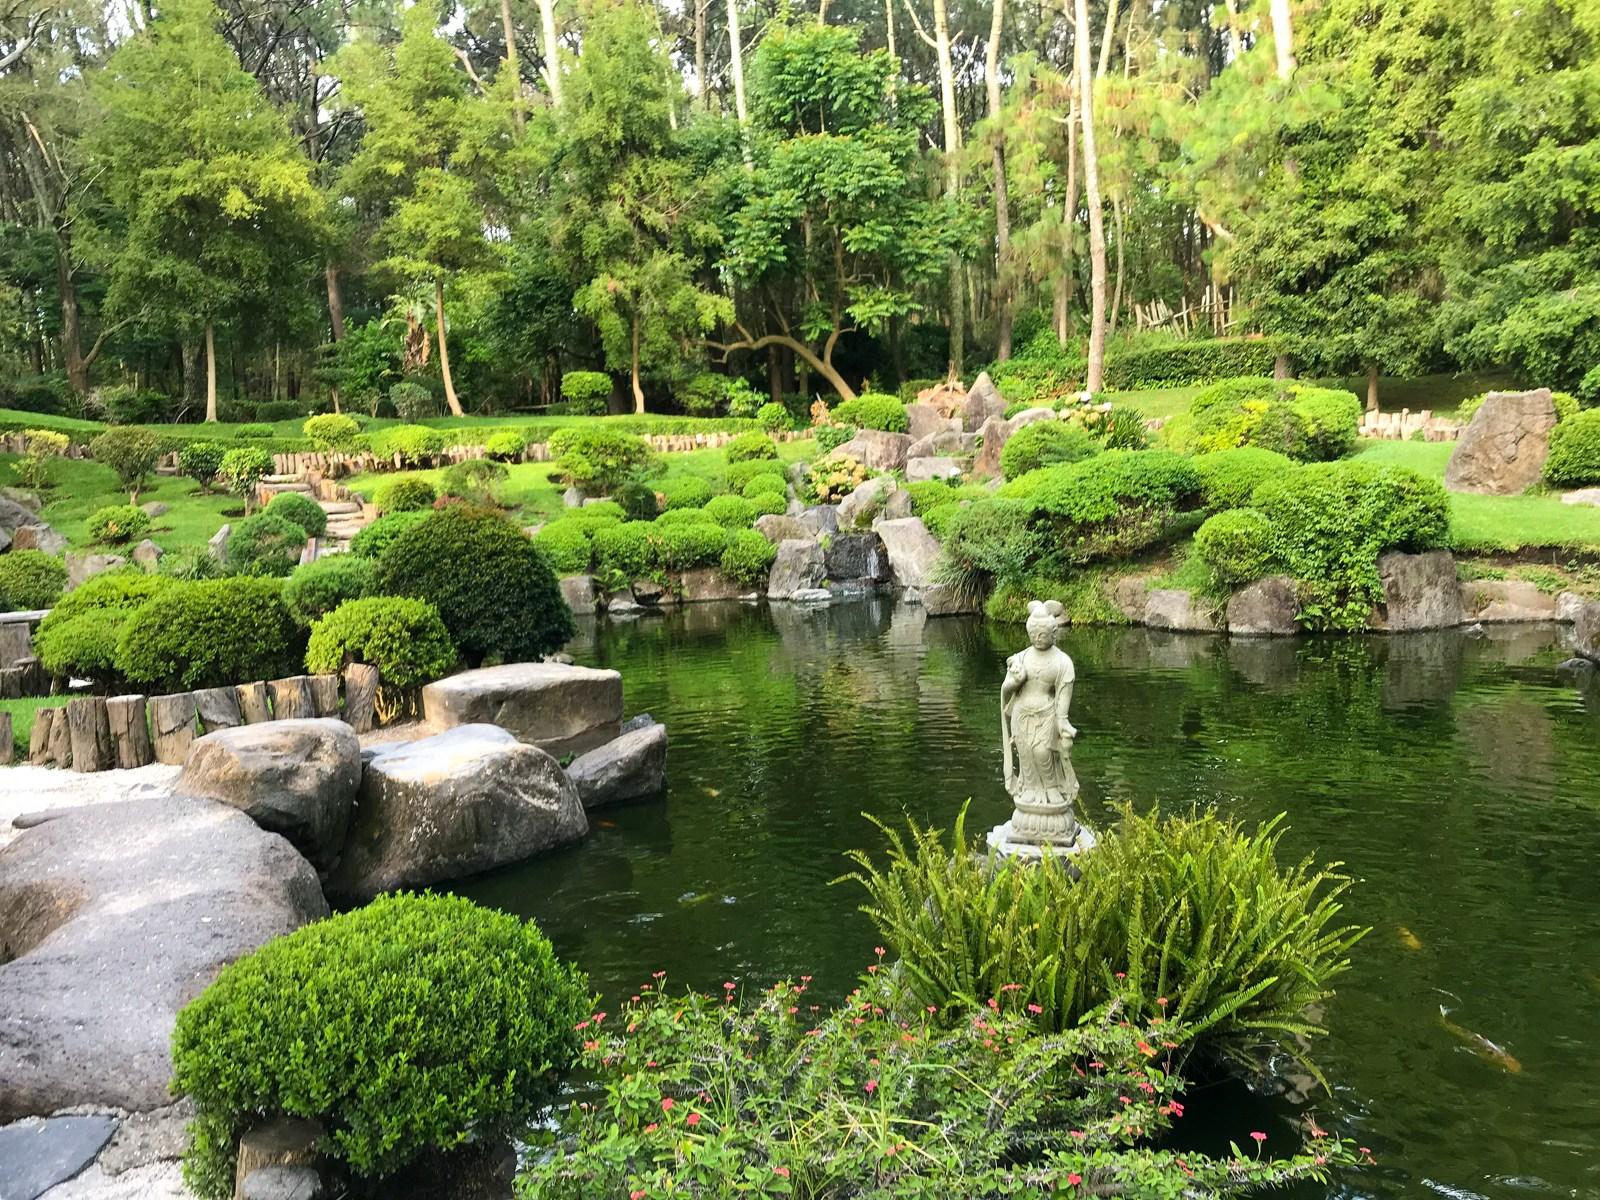 Un jardín junto a un estanque de agua

Descripción generada automáticamente con confianza media